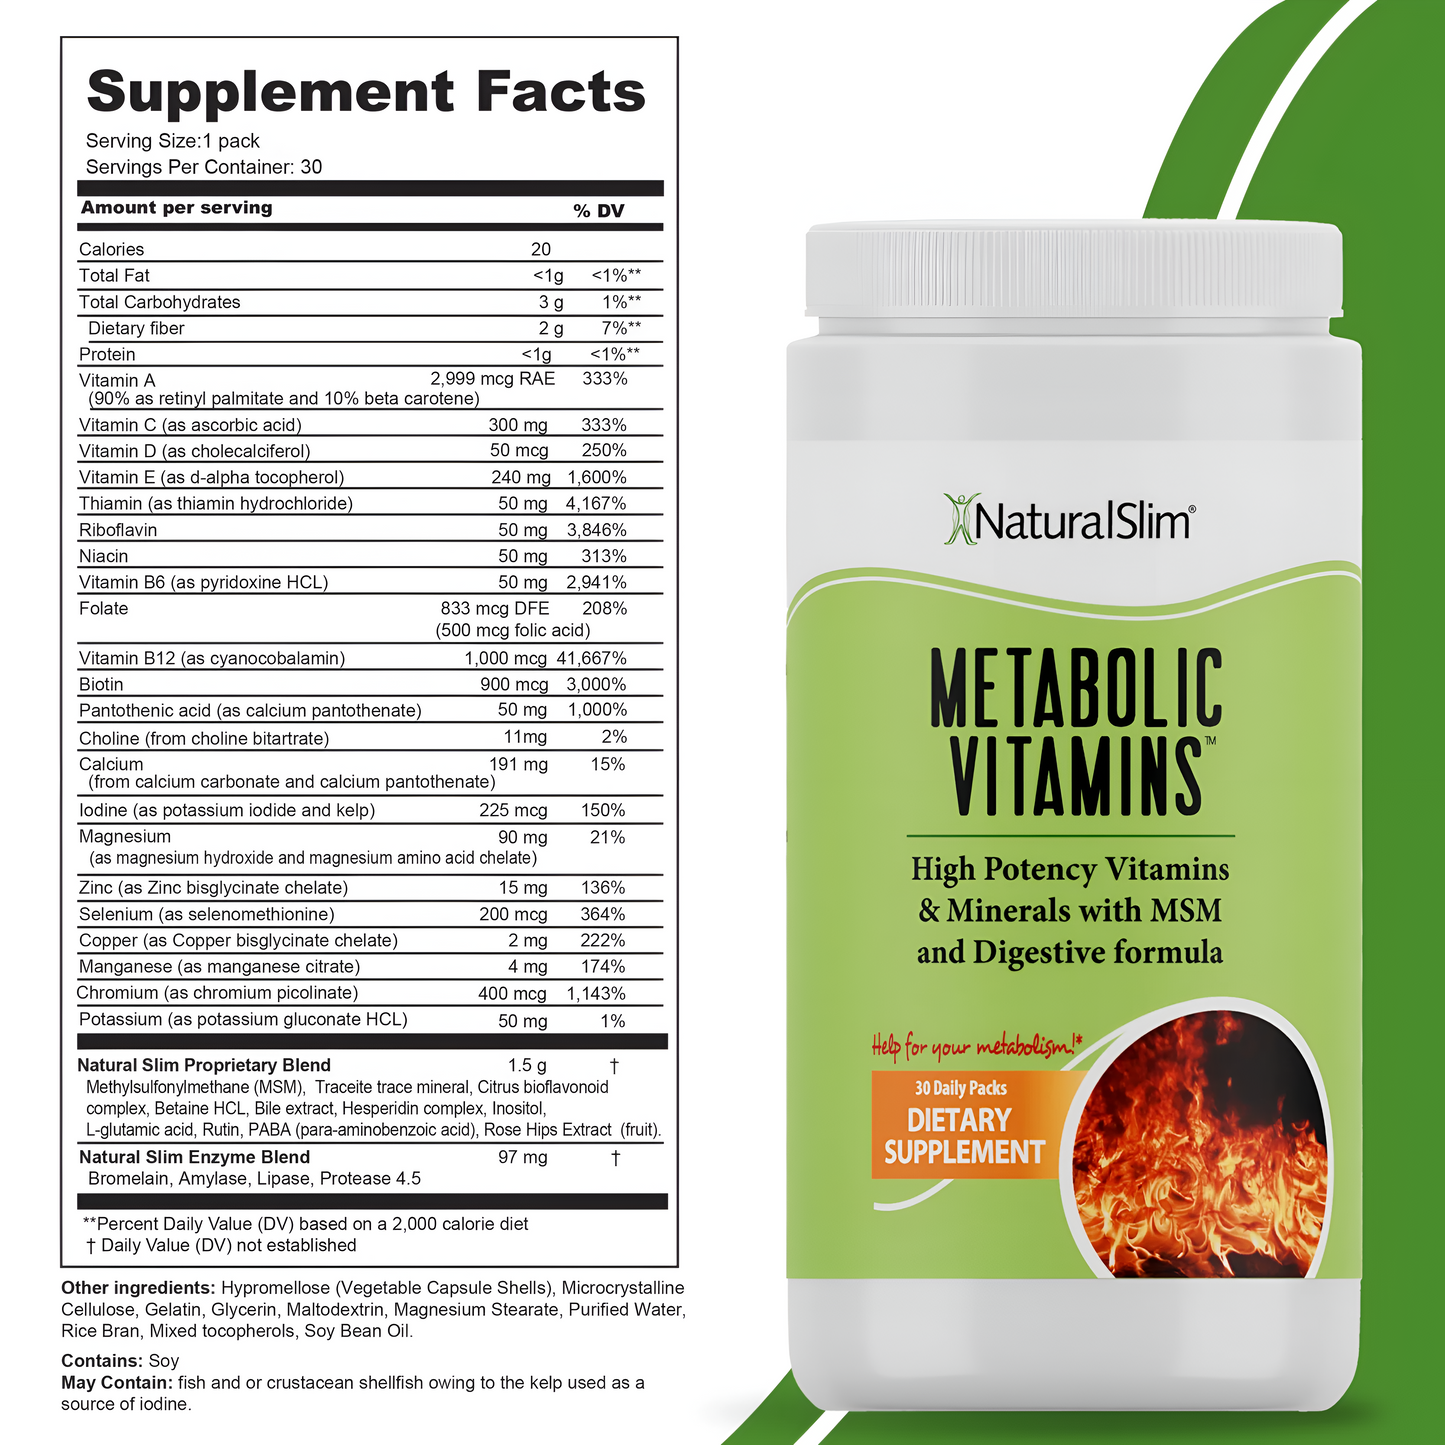 Metabolic Vitamins Natural Slim